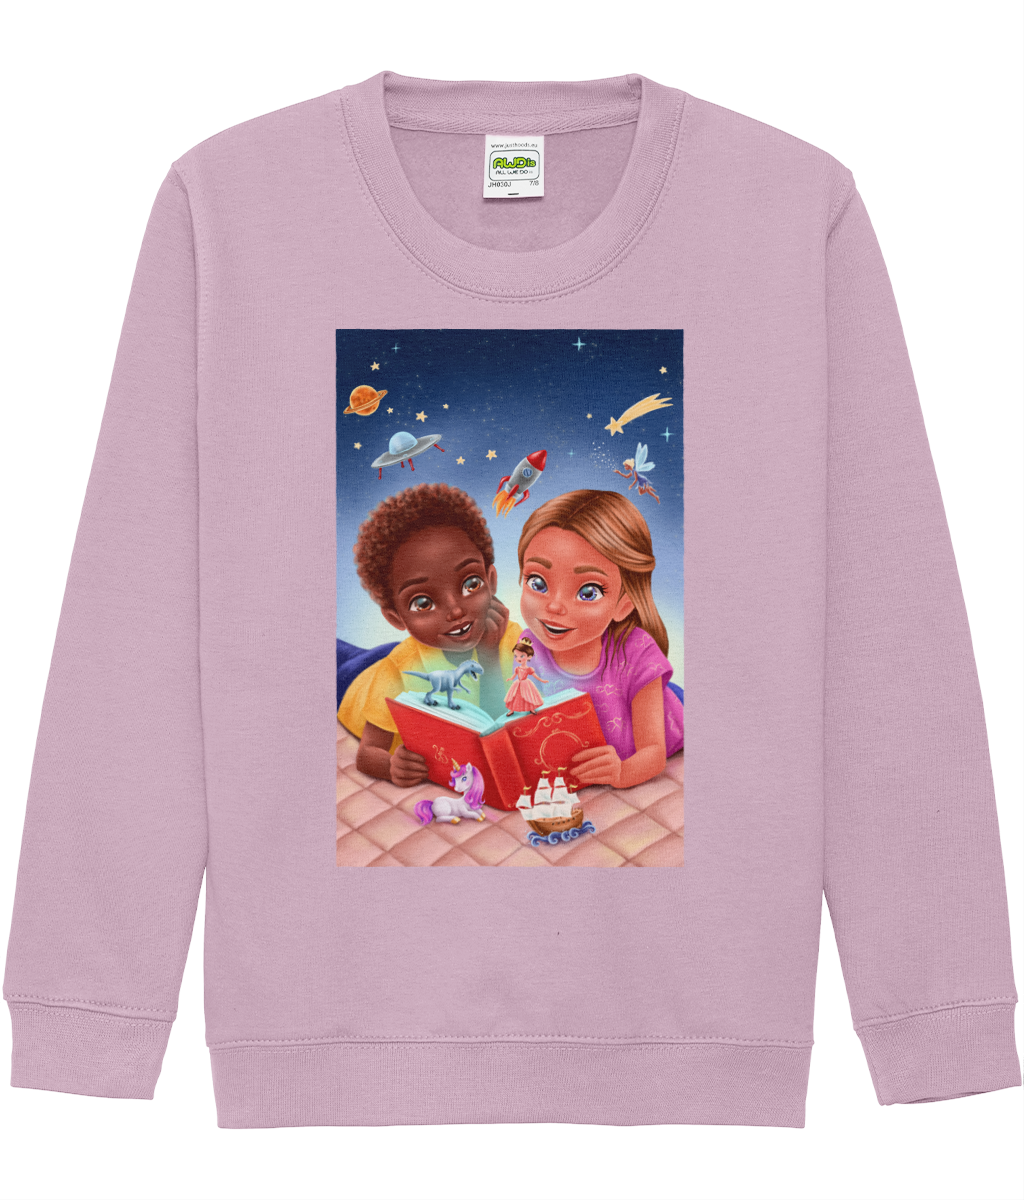 Cartoon design sweatshirt Reading Diversity - Unisex Children